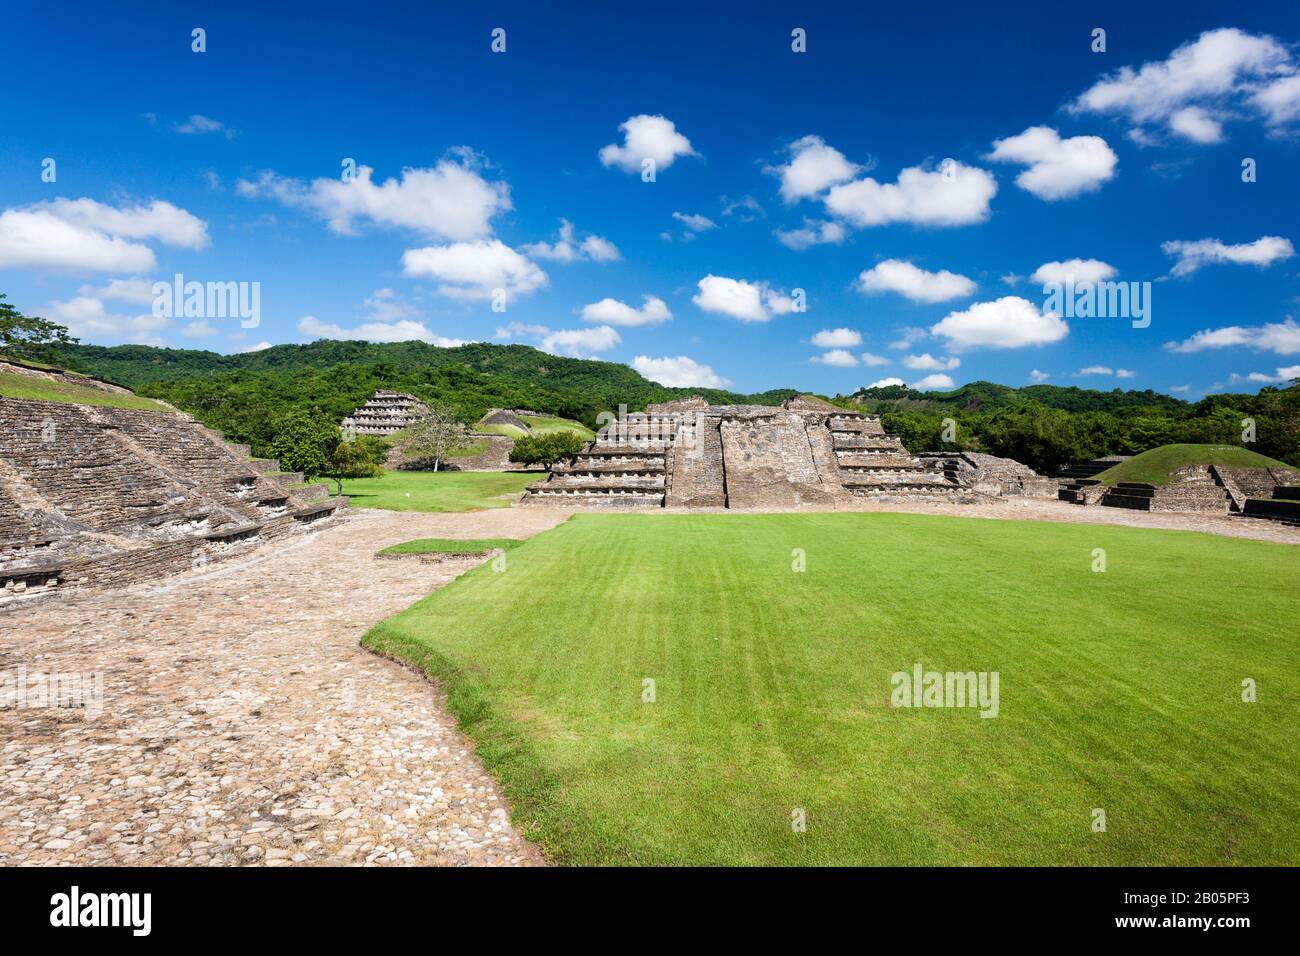 Gruppo Arroyo di El Tajin, il più importante sito archeologico della Mesoamerica nord-orientale, rovine Maya, Veracruz, Messico, America Centrale Foto Stock